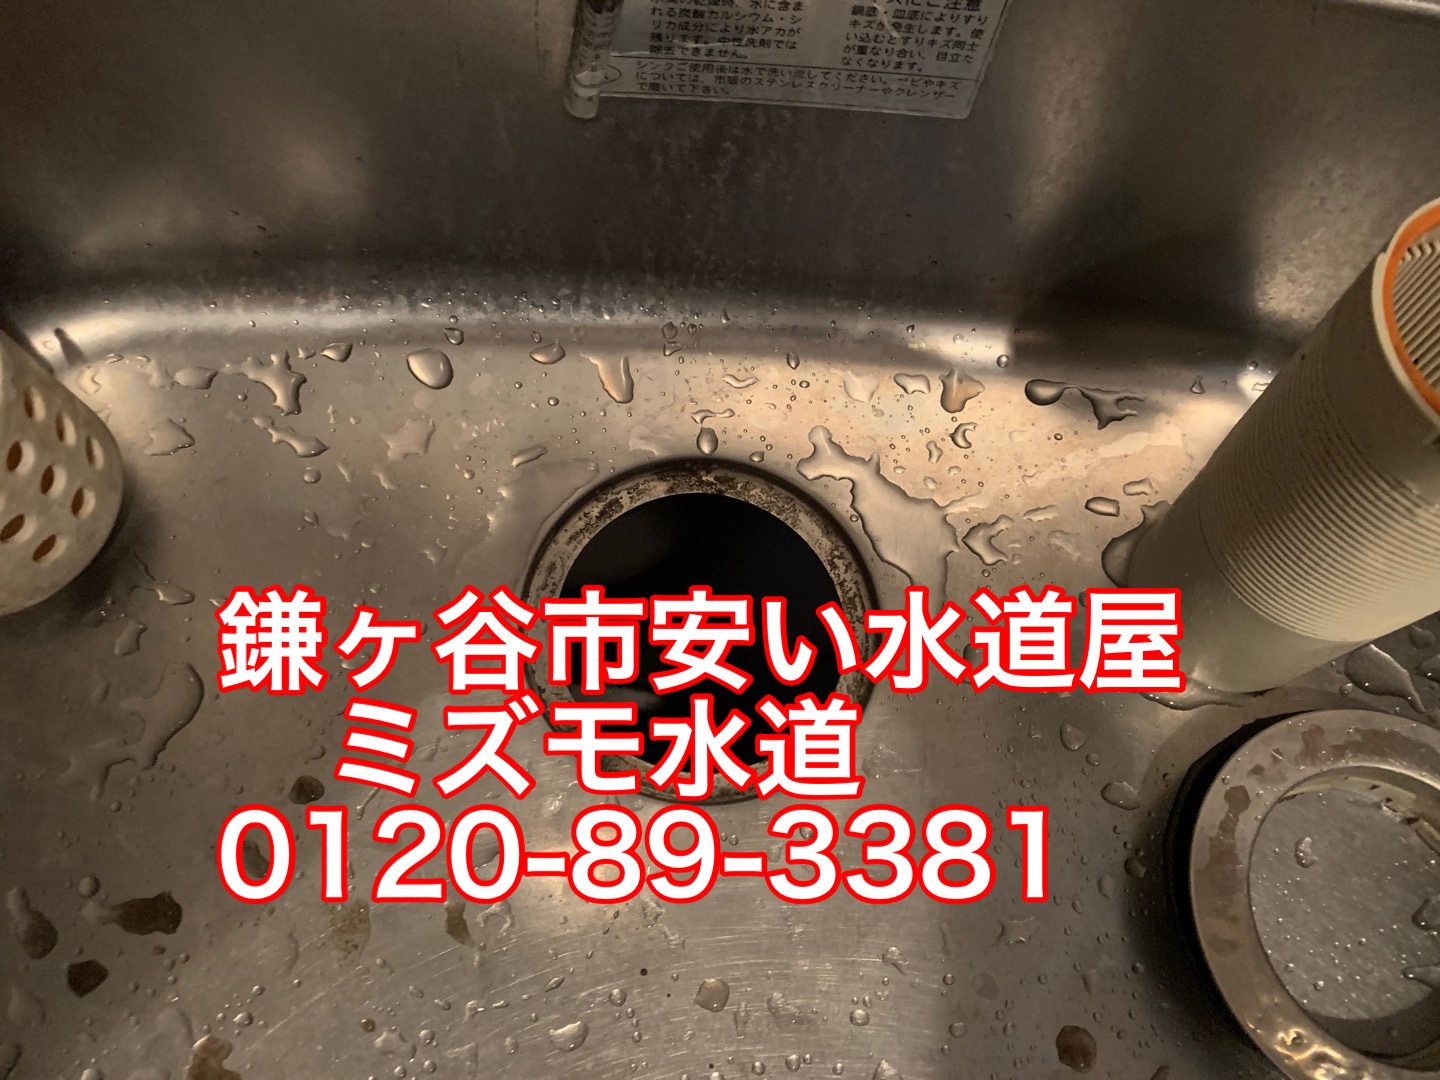 キッチン排水トラップ水漏れ修理鎌ヶ谷市東町